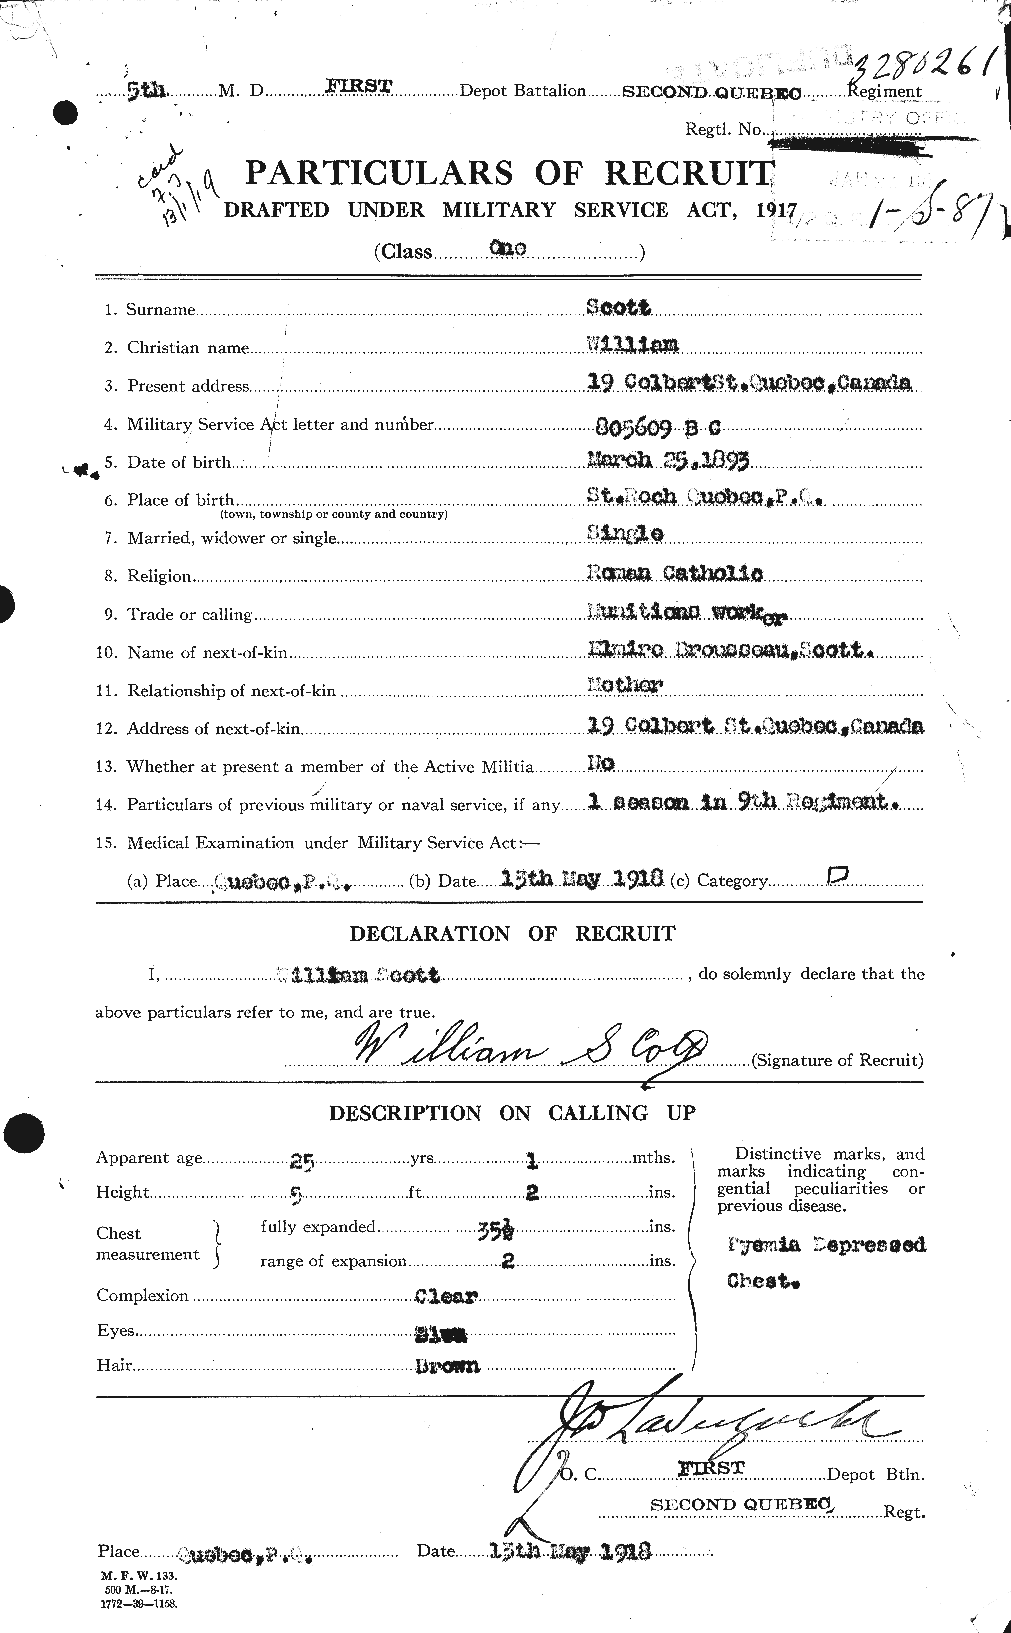 Dossiers du Personnel de la Première Guerre mondiale - CEC 087348a